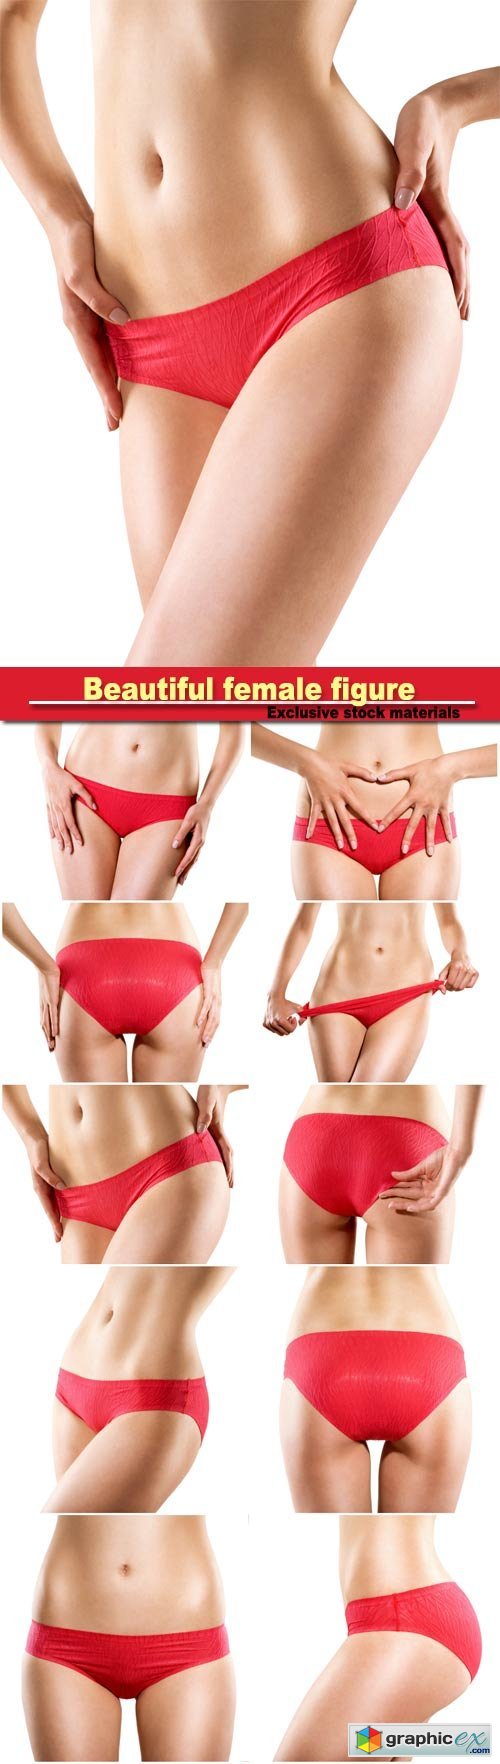 Beautiful female figure girl in red underwear